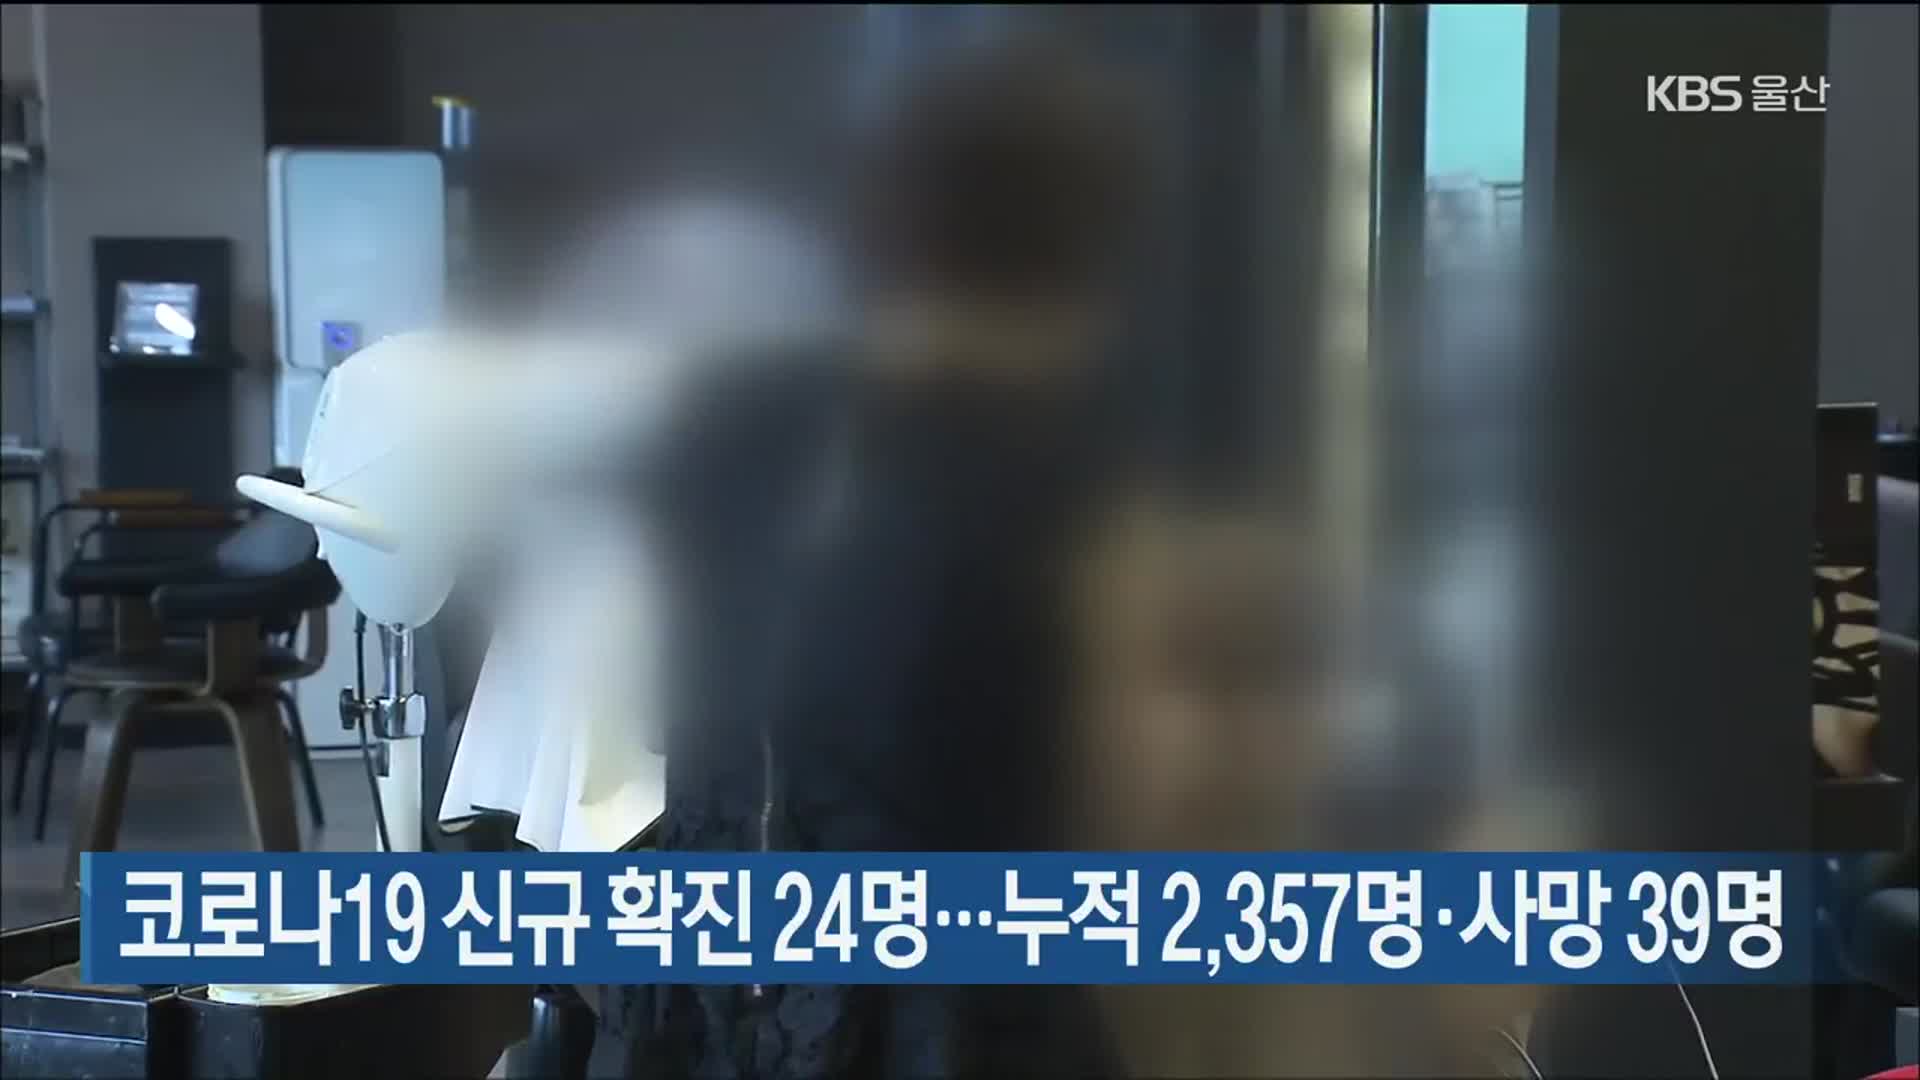 울산 코로나19 신규 확진 24명…누적 2,357명·사망 39명